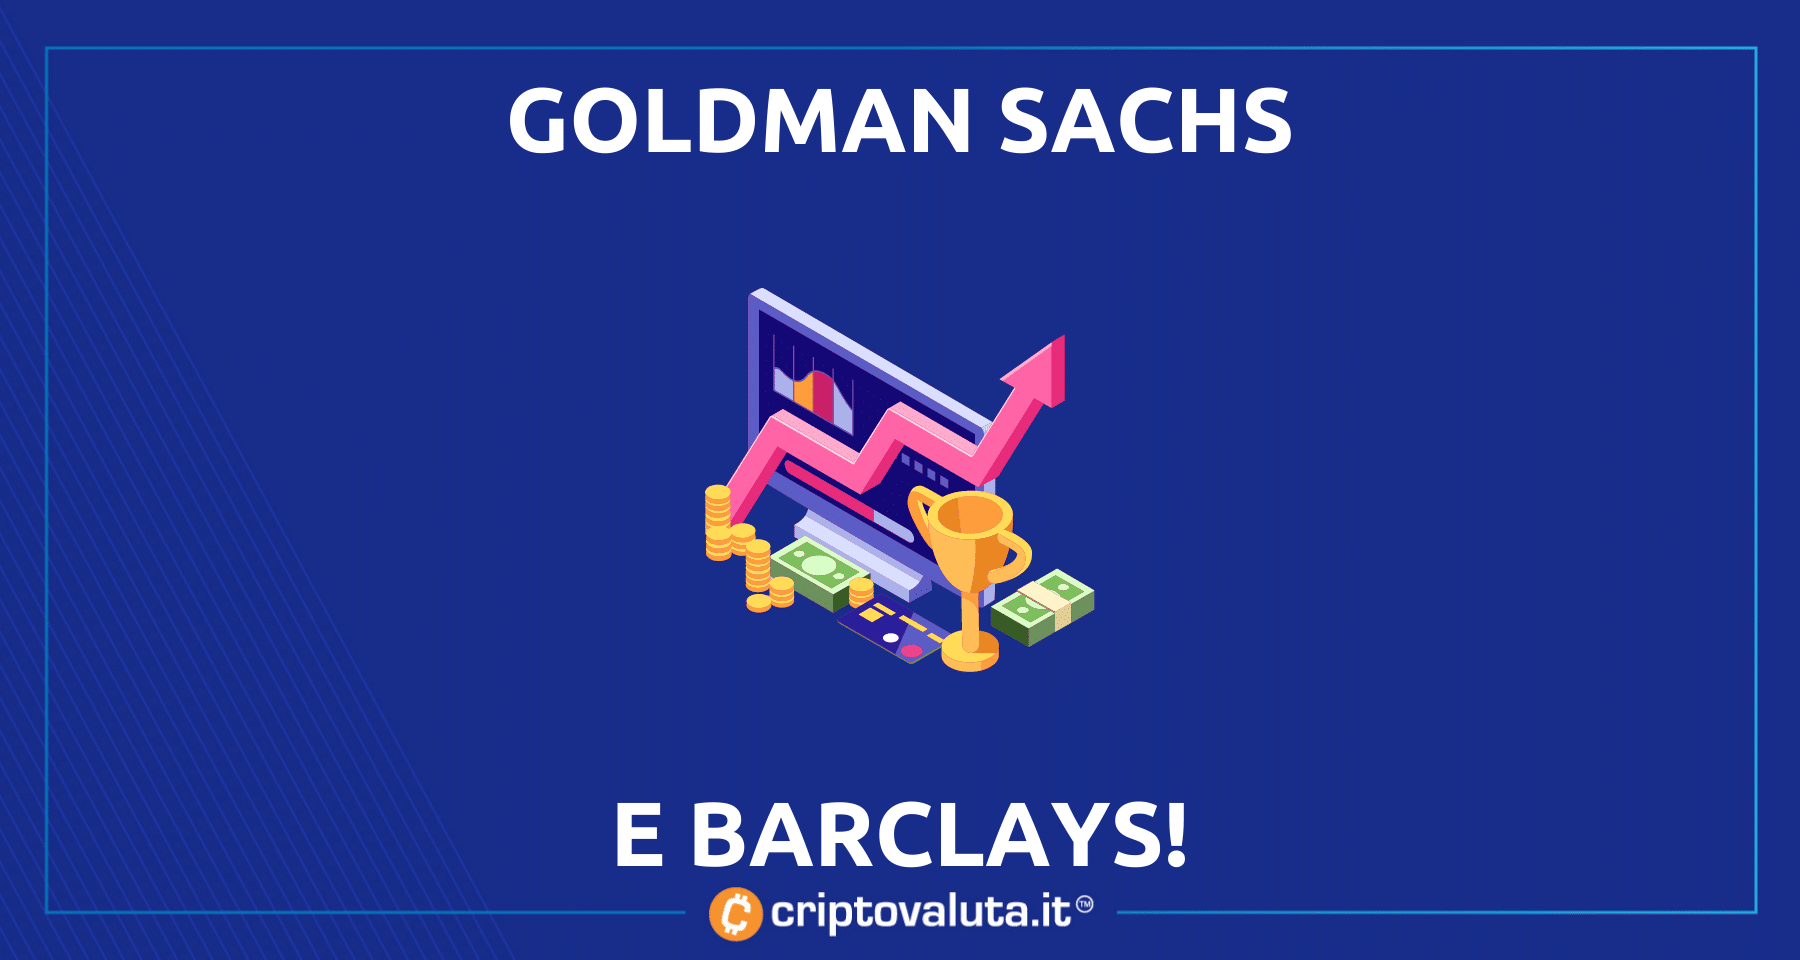 Barclays e Goldman Sachs puntano su Bitcoin e cripto | Investimento in Elwood